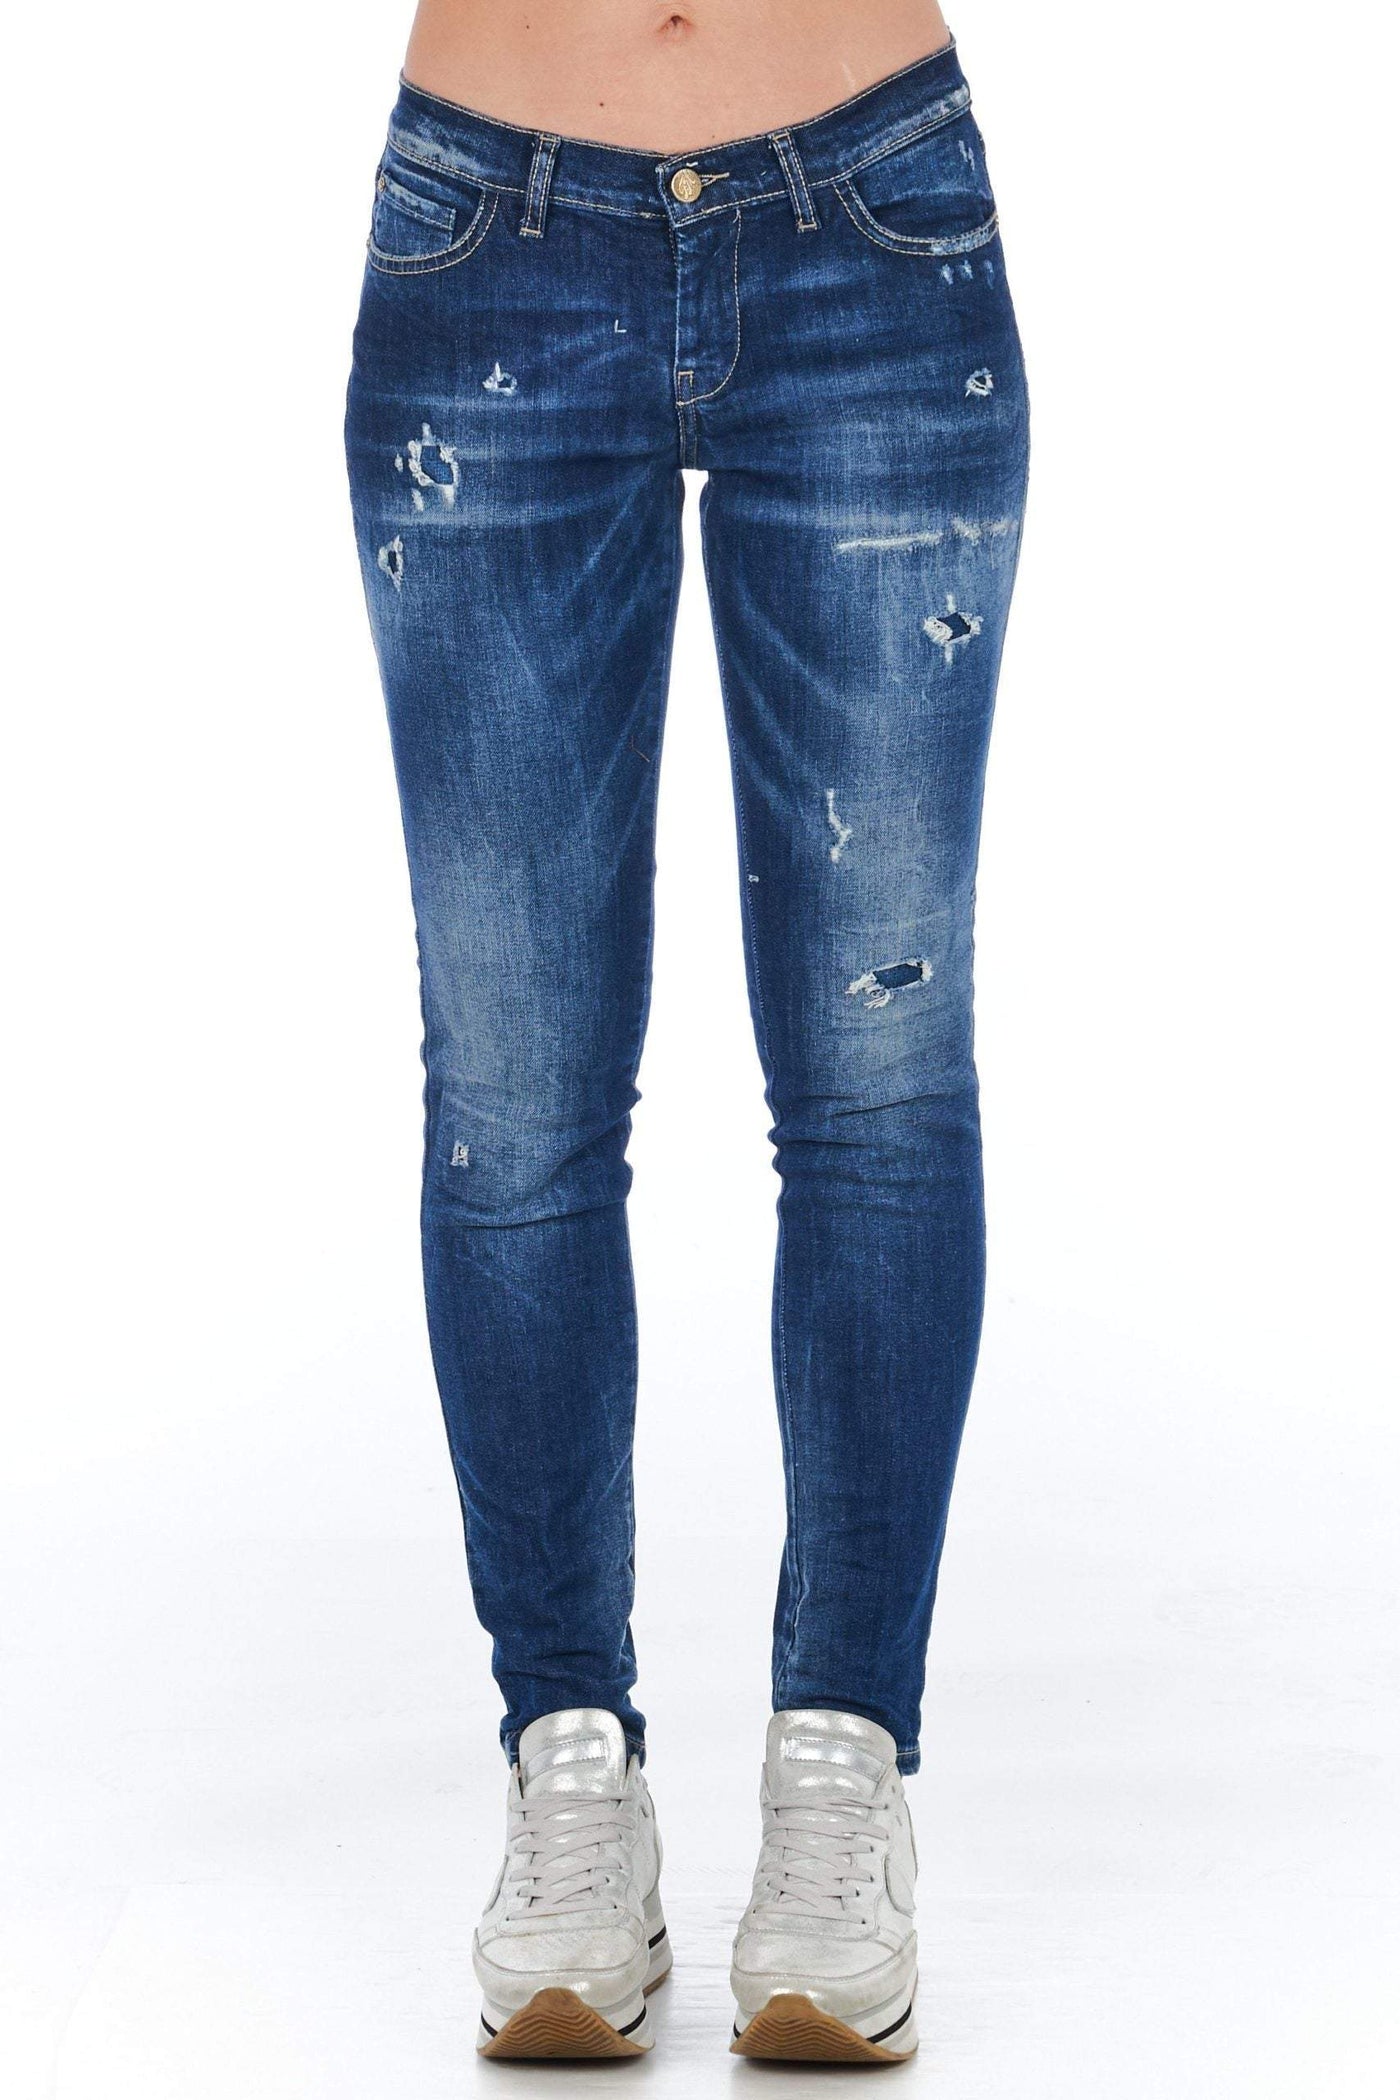 Frankie Morello Blue Cotton Jeans & Pant Blue, feed-1, Frankie Morello, Jeans & Pants - Women - Clothing, W25 | IT39, W26 | IT40, W27 | IT41, W28 | IT42, W29 | IT43, W30 | IT44 at SEYMAYKA